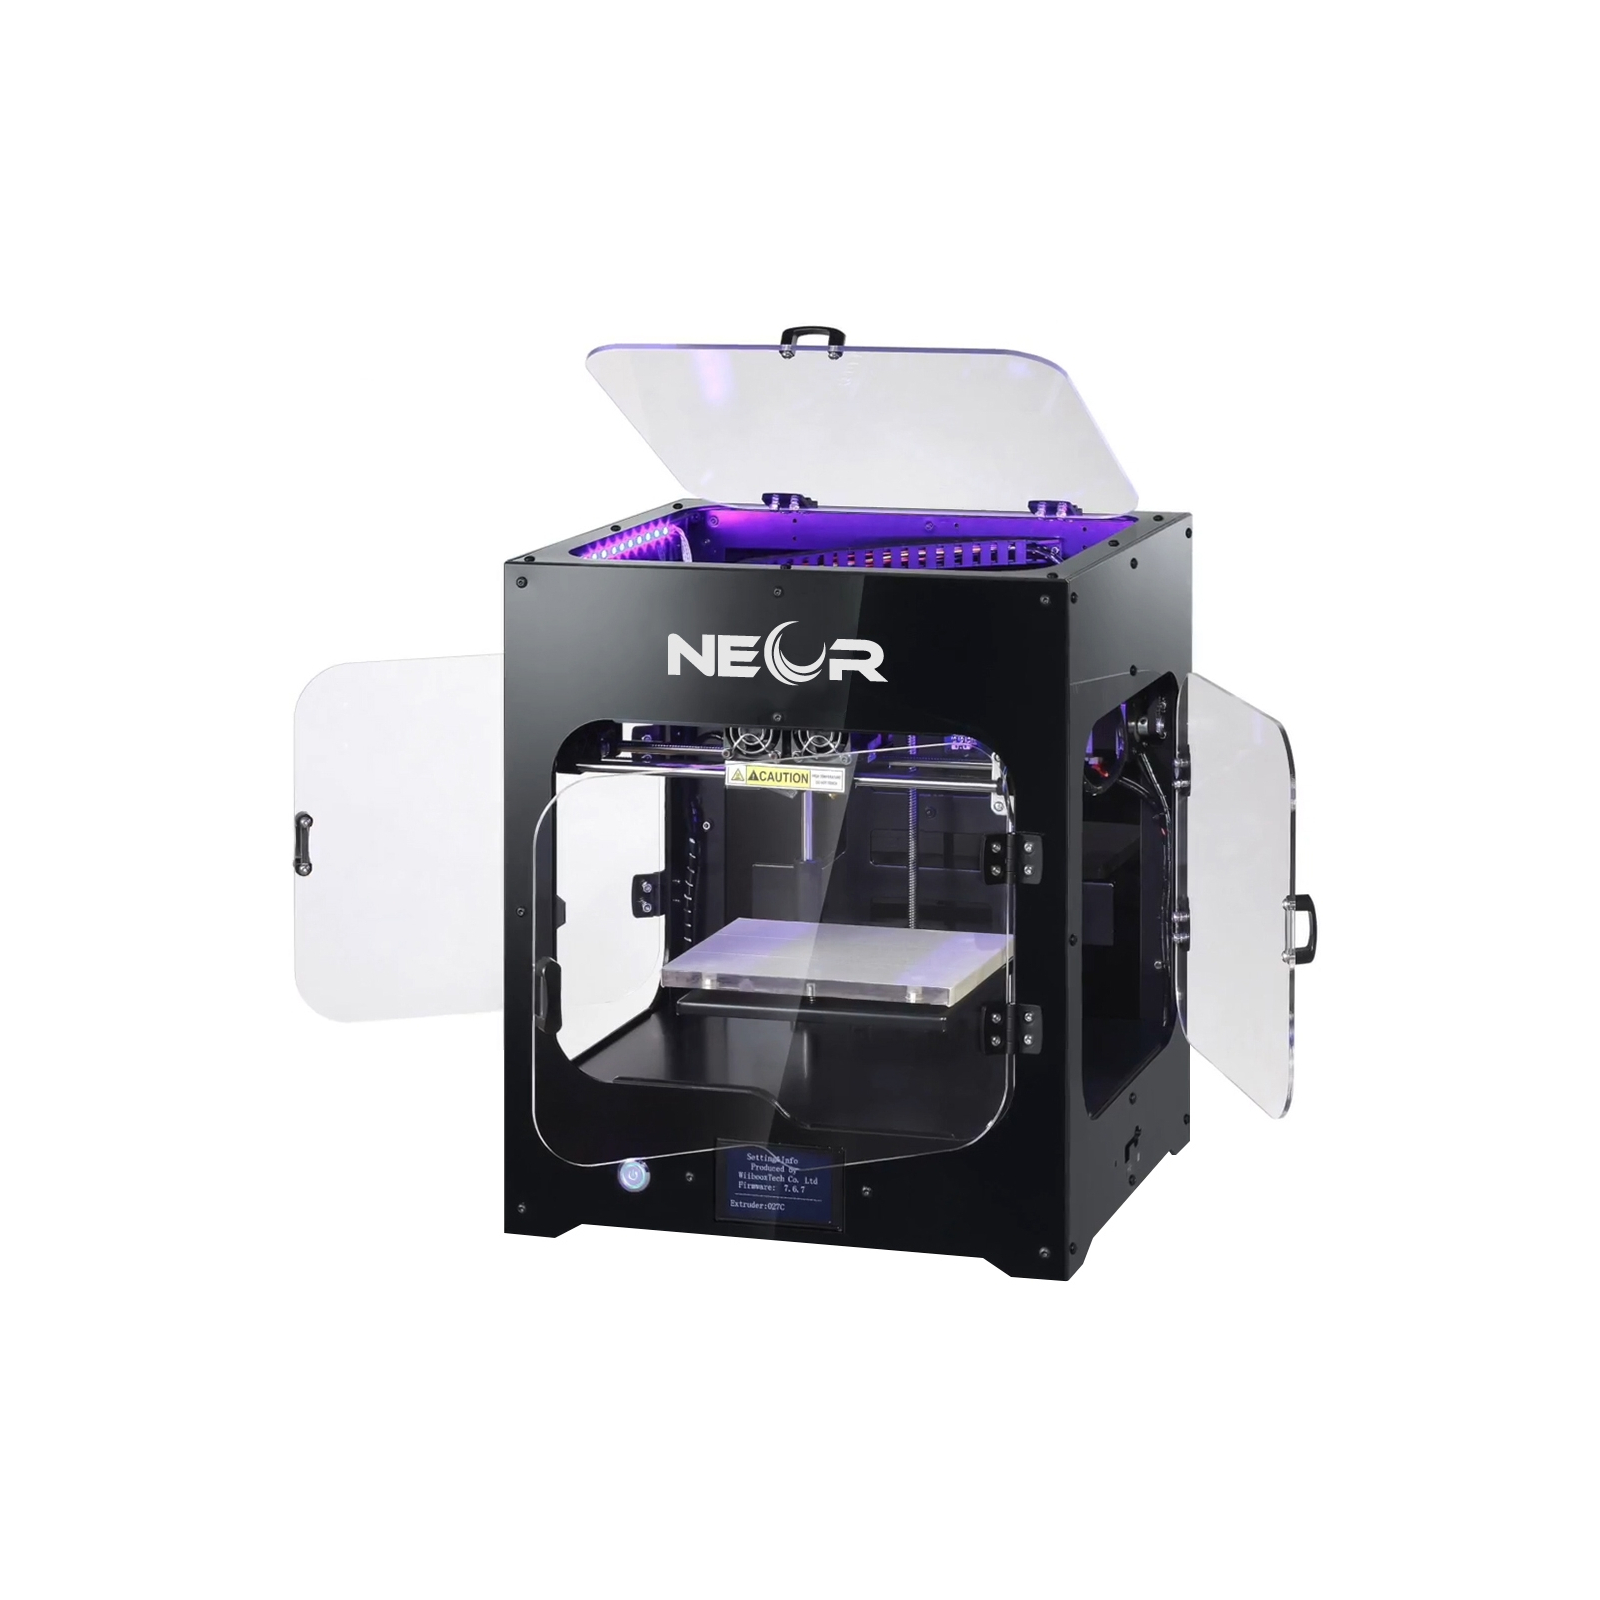 3D-принтер Neor Professional изображение 3